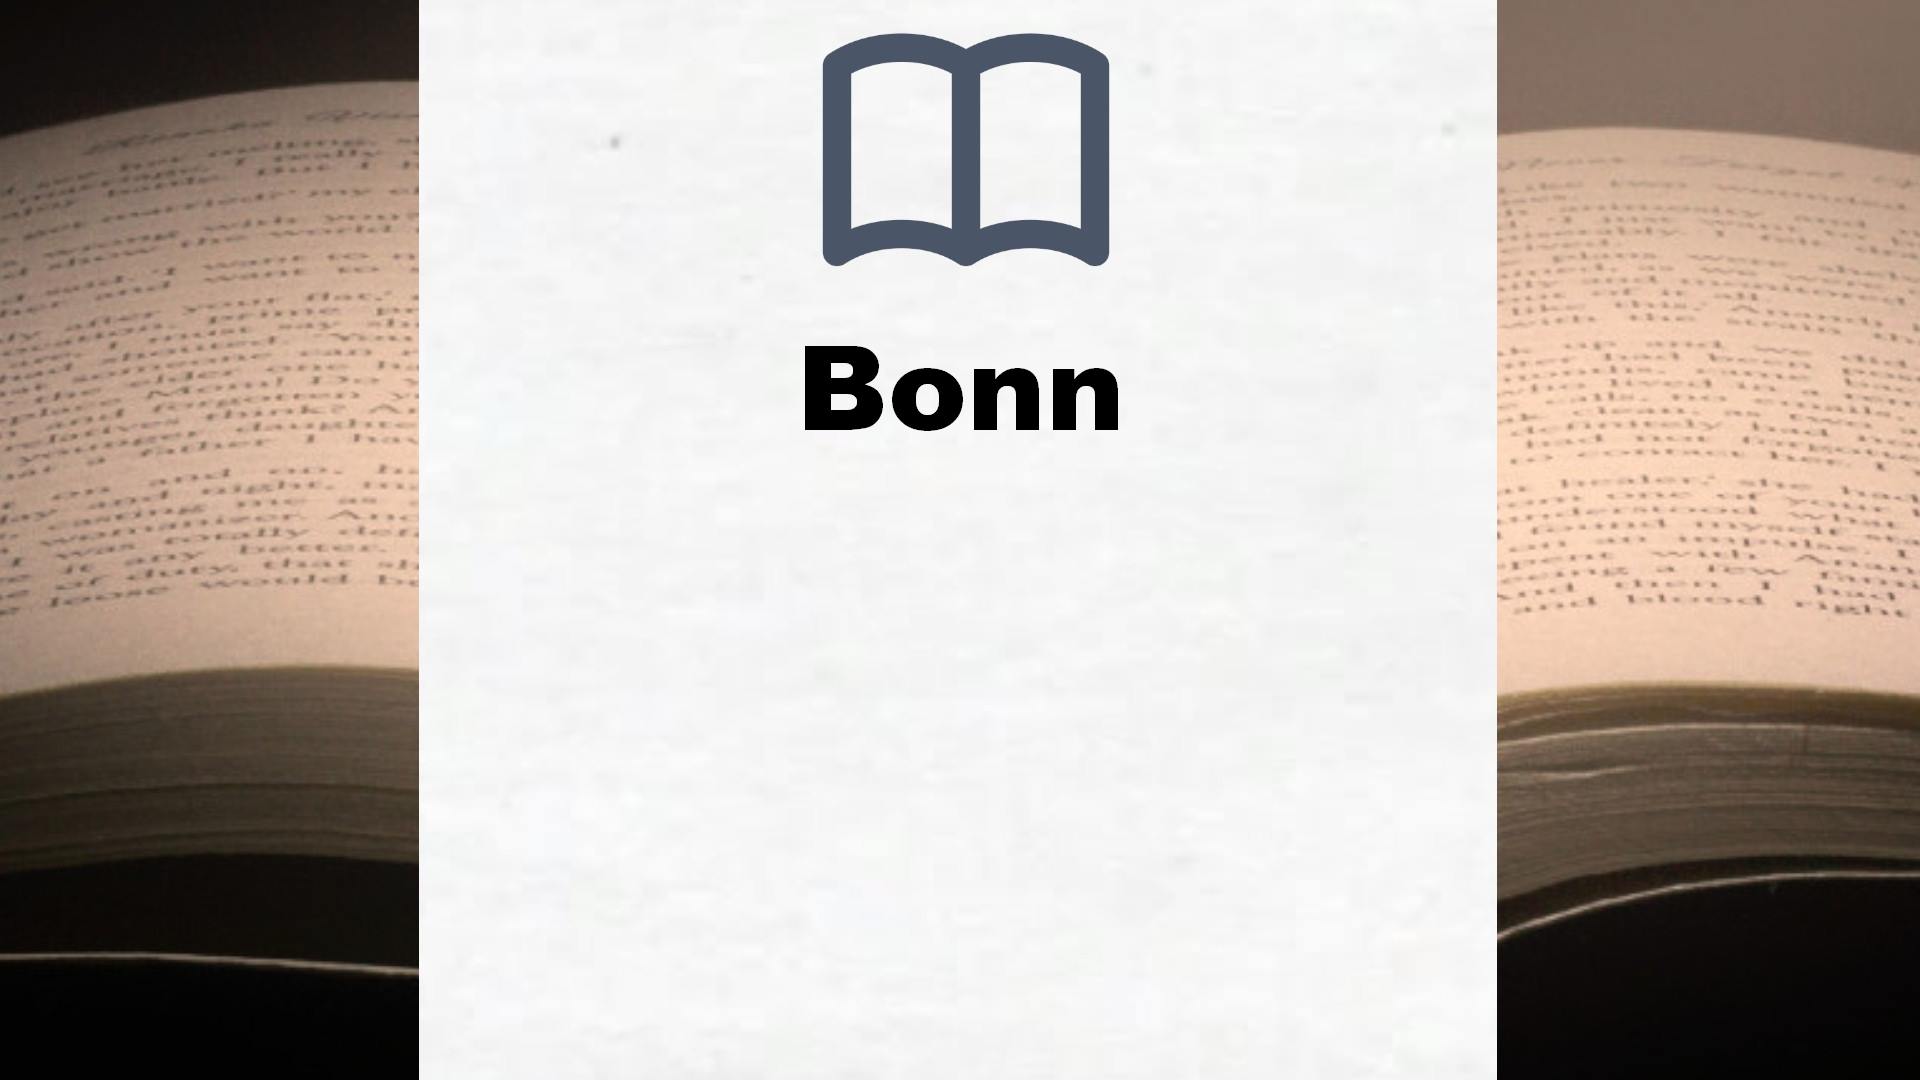 Bücher über Bonn